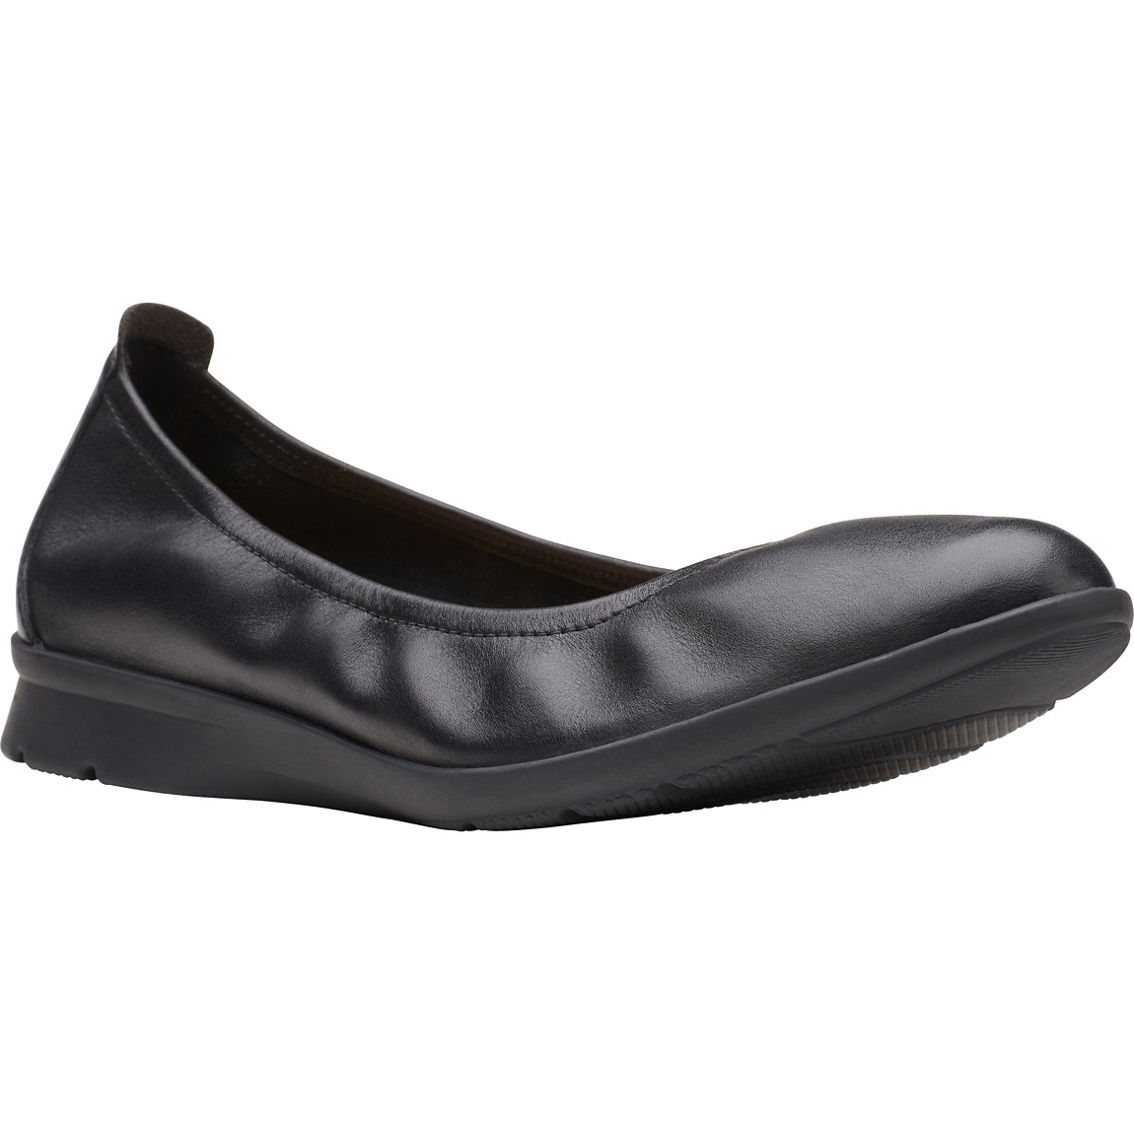 Clarks Jenette Ease Leather Ballet Flats | Flats | Shoes | Shop The ...